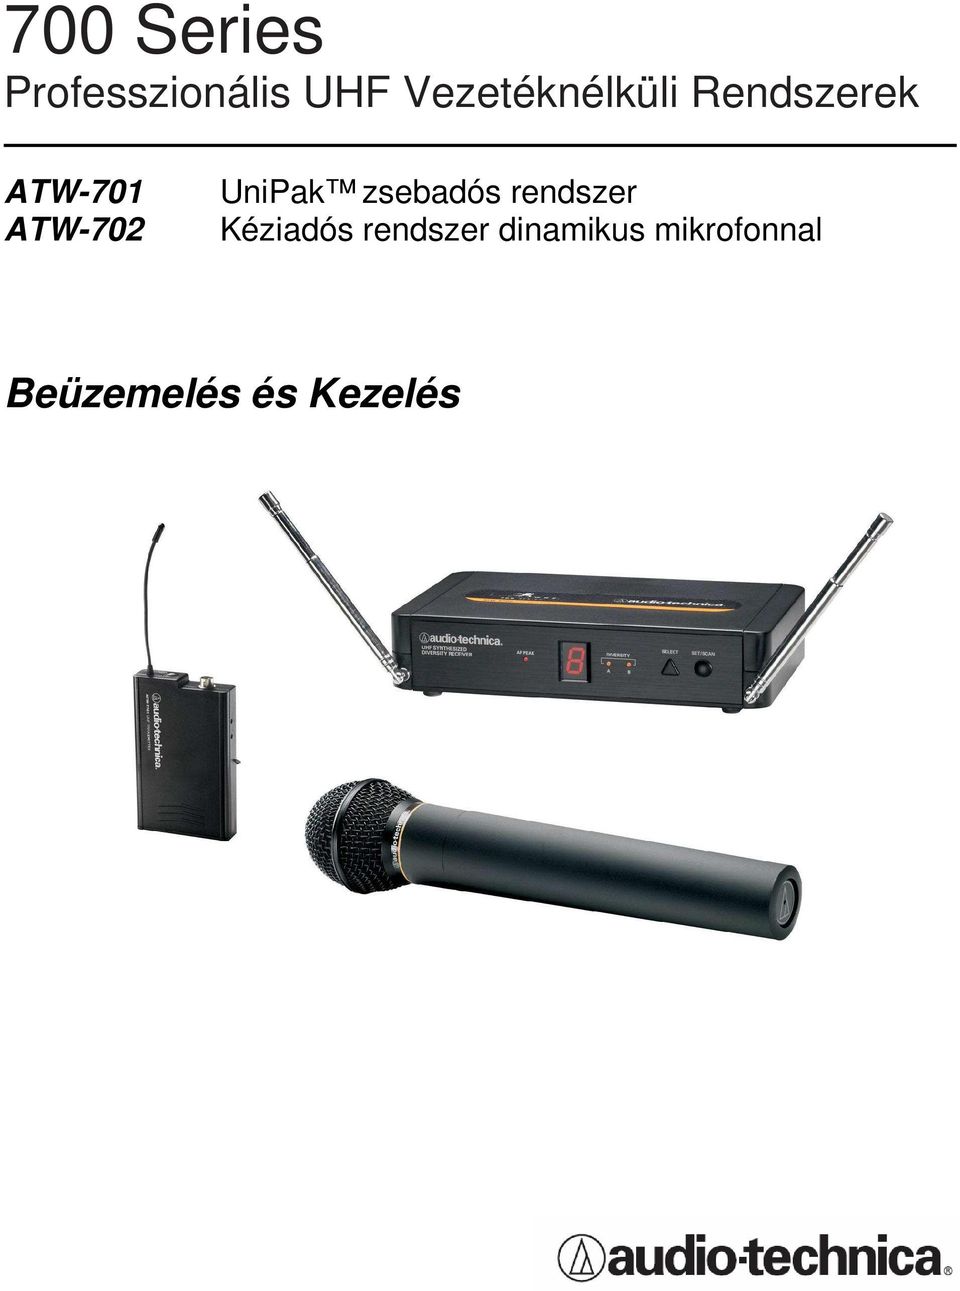 ATW-702 UniPak zsebadós rendszer